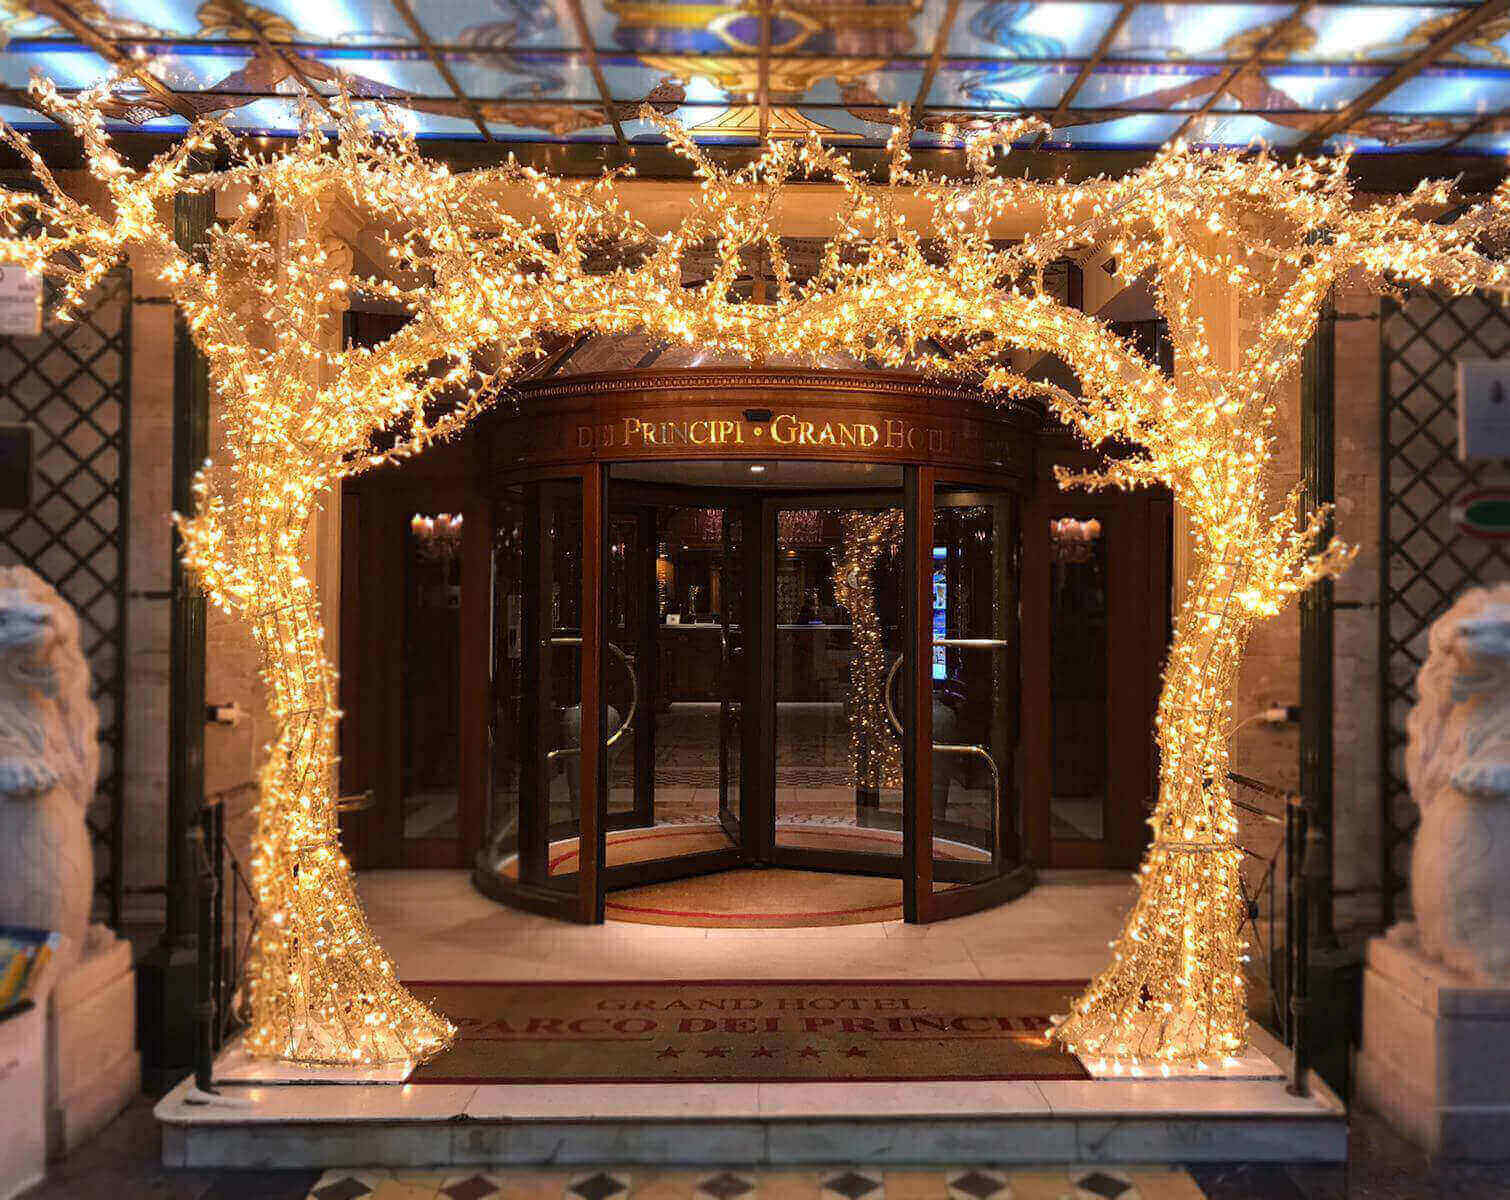 Grand Hotel Parco dei Principi Roma – Illuminazione natalizia esterna